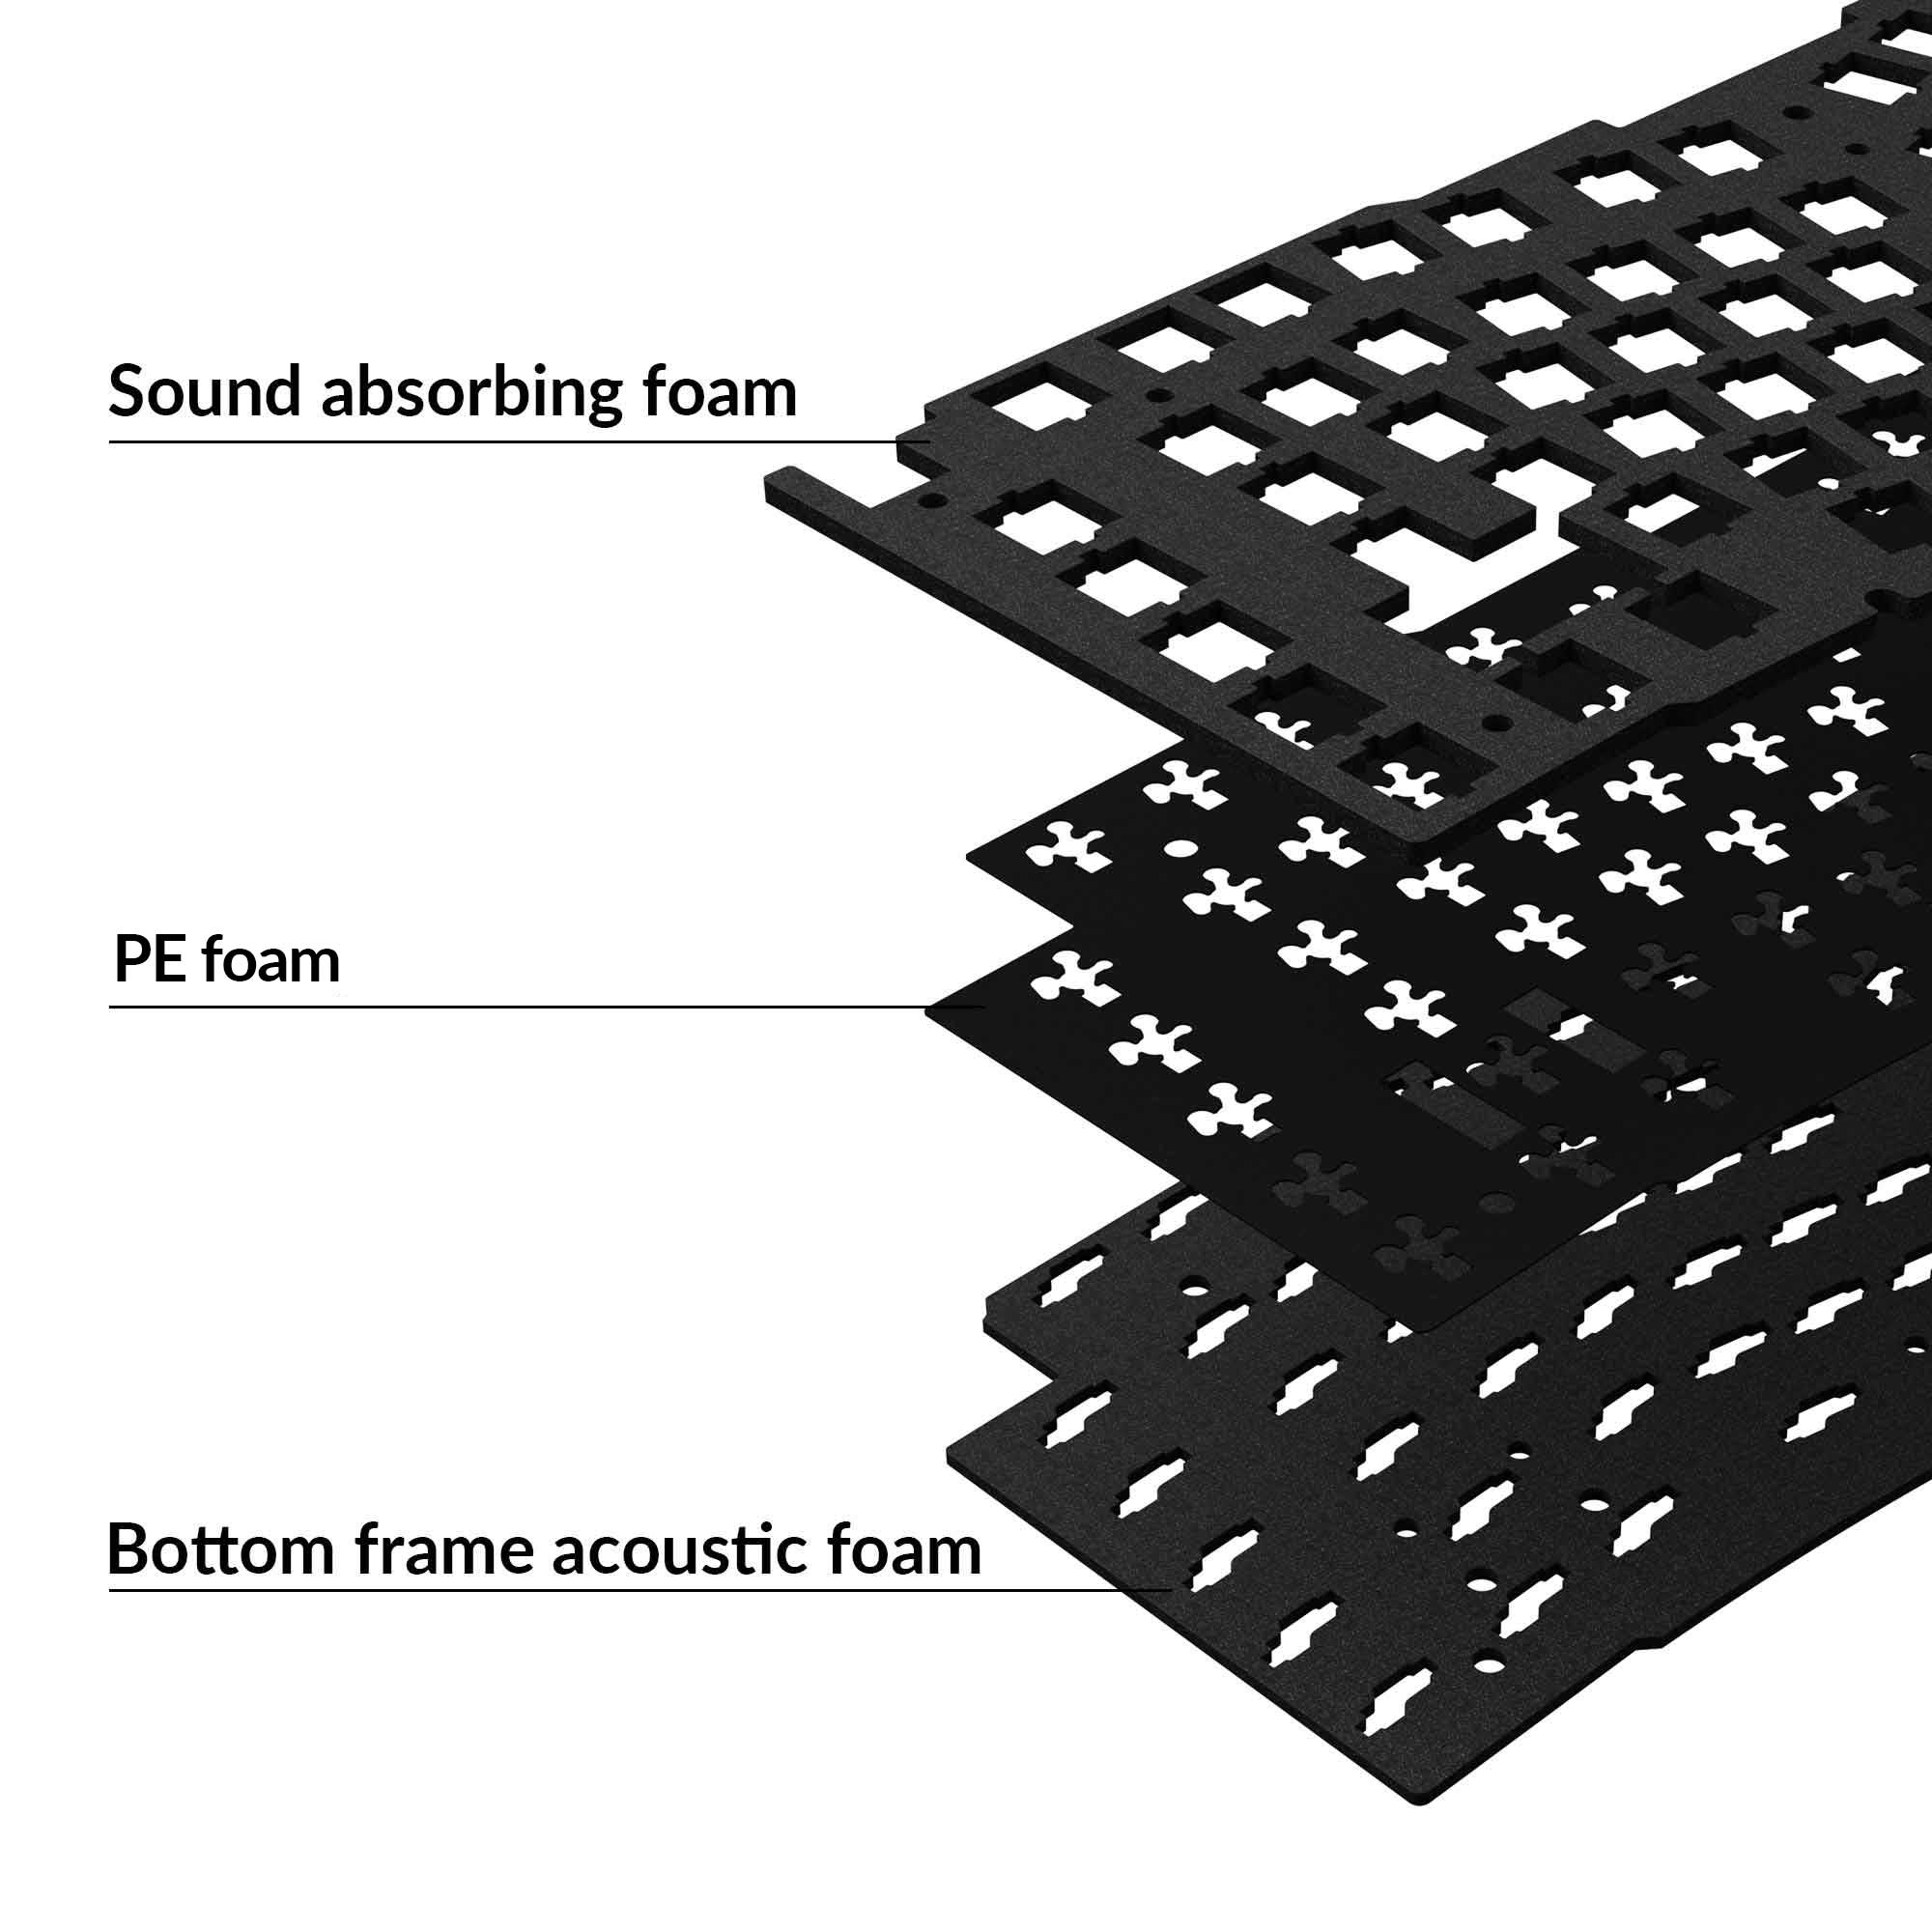 PORON® Keyboard Sound Dampening Foam for Foam Mod